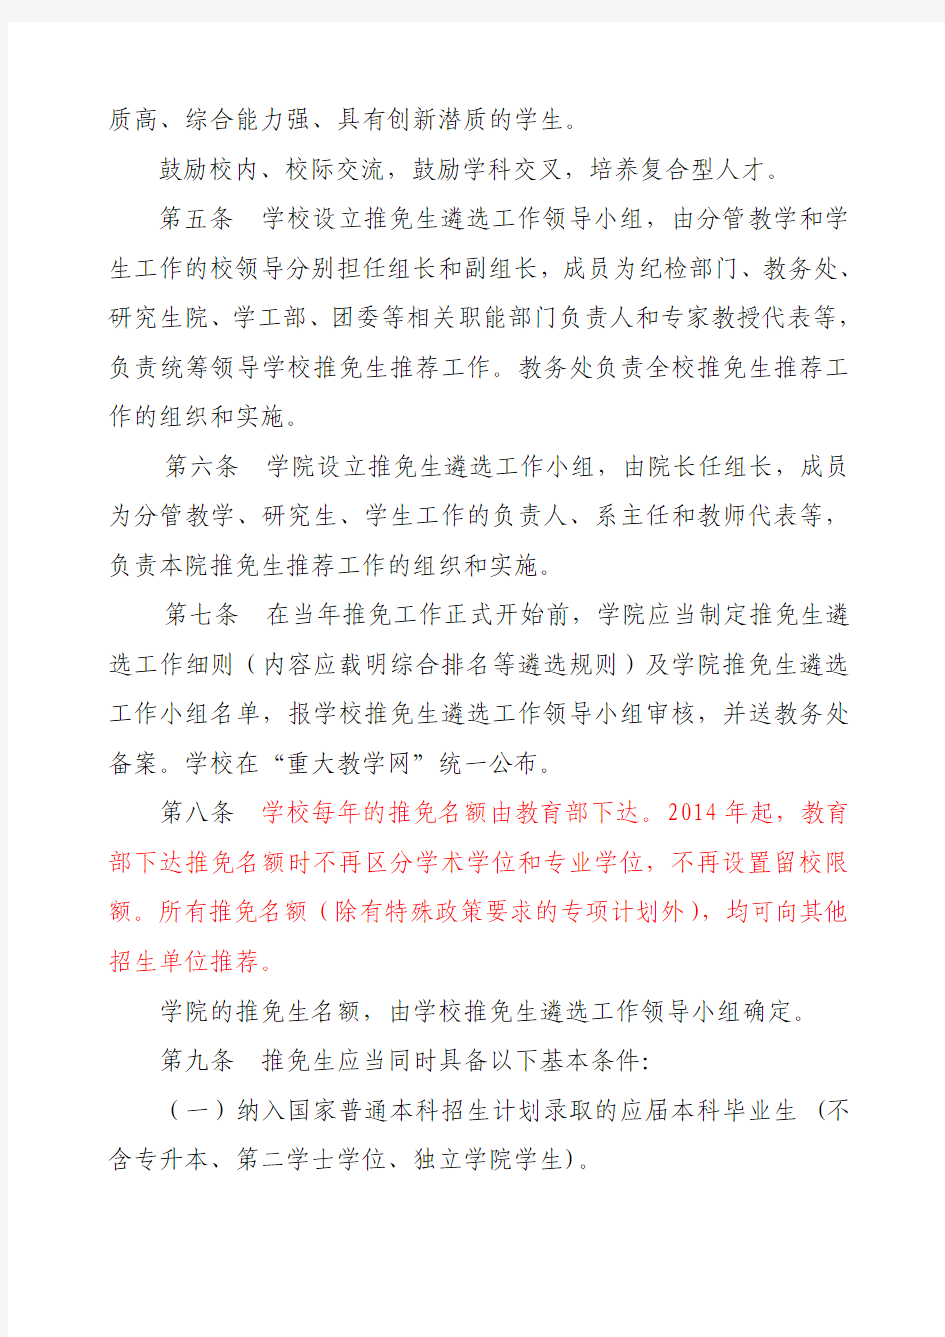 重庆大学推荐优秀应届本科毕业生免试攻读硕士学位研究生管理工作办法(定稿)